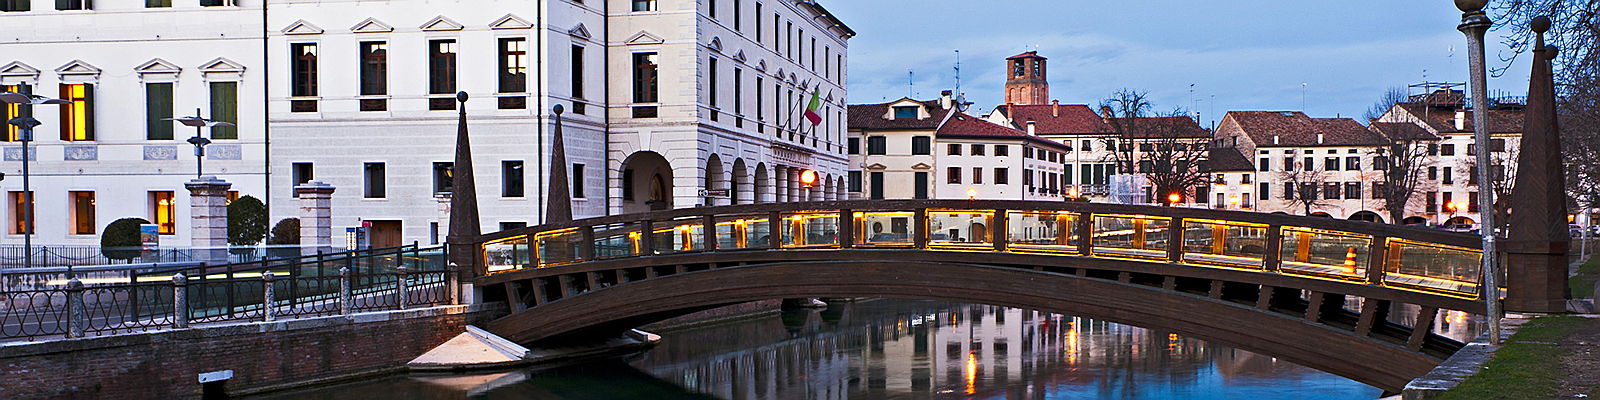  Treviso
- appartamenti-treviso-centro.jpg